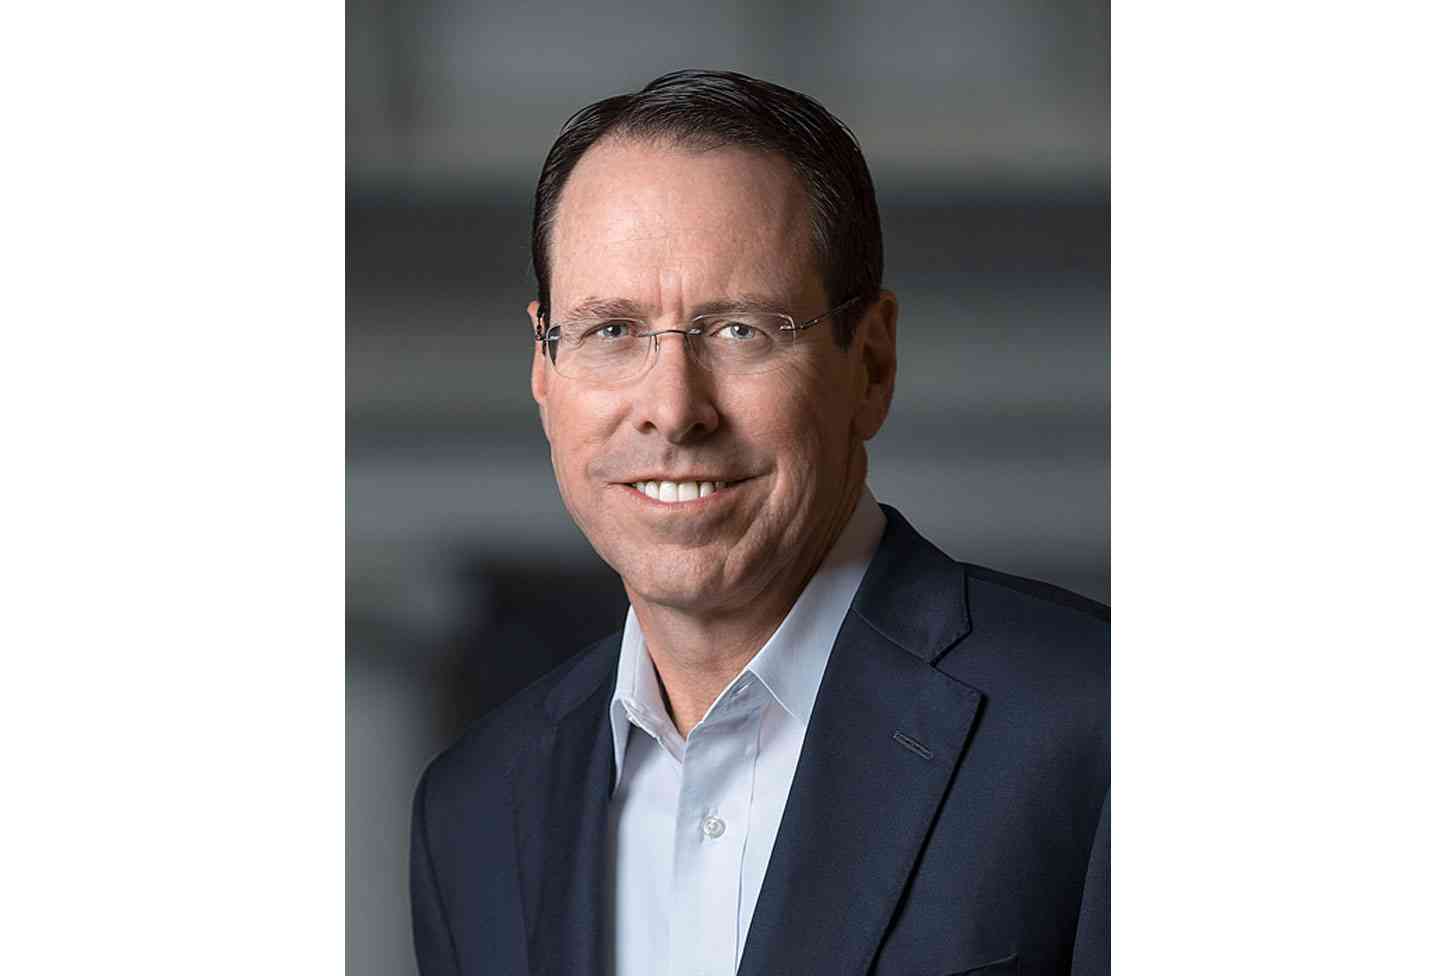 AT&T CEO Randall Stephenson